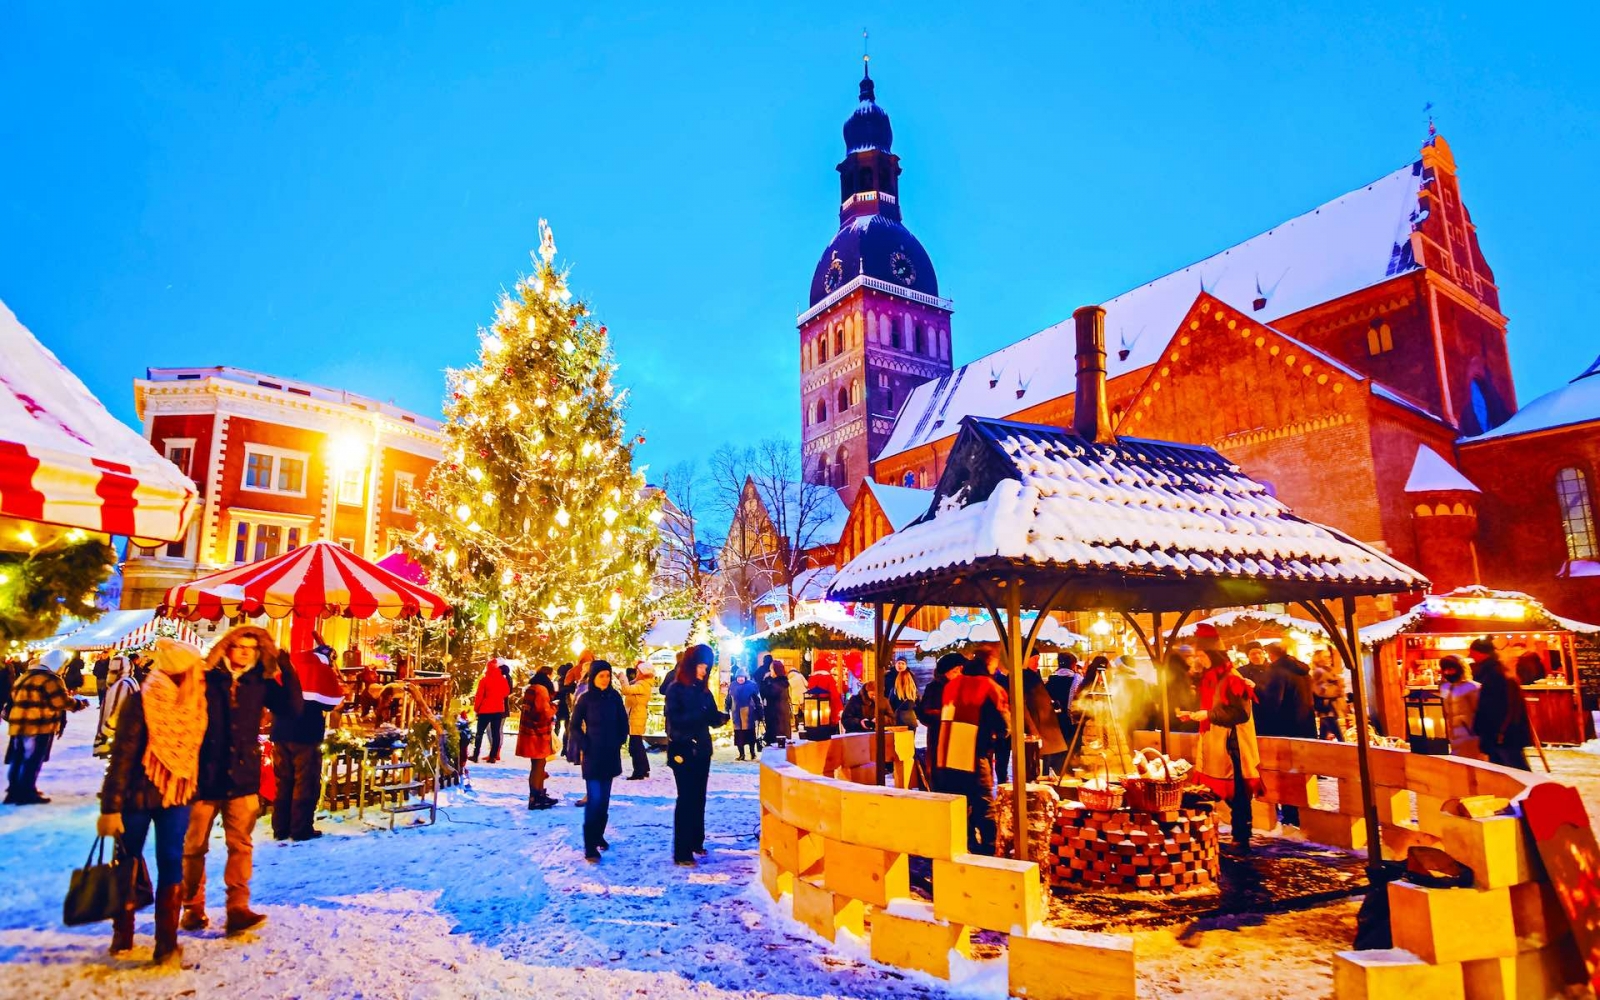 Nächtliches Stadtbild mit Weihnachtsmarkt am Domplatz im Winter Riga, Lettland.  Adventsmarktdekoration und Stände mit Kunsthandwerk